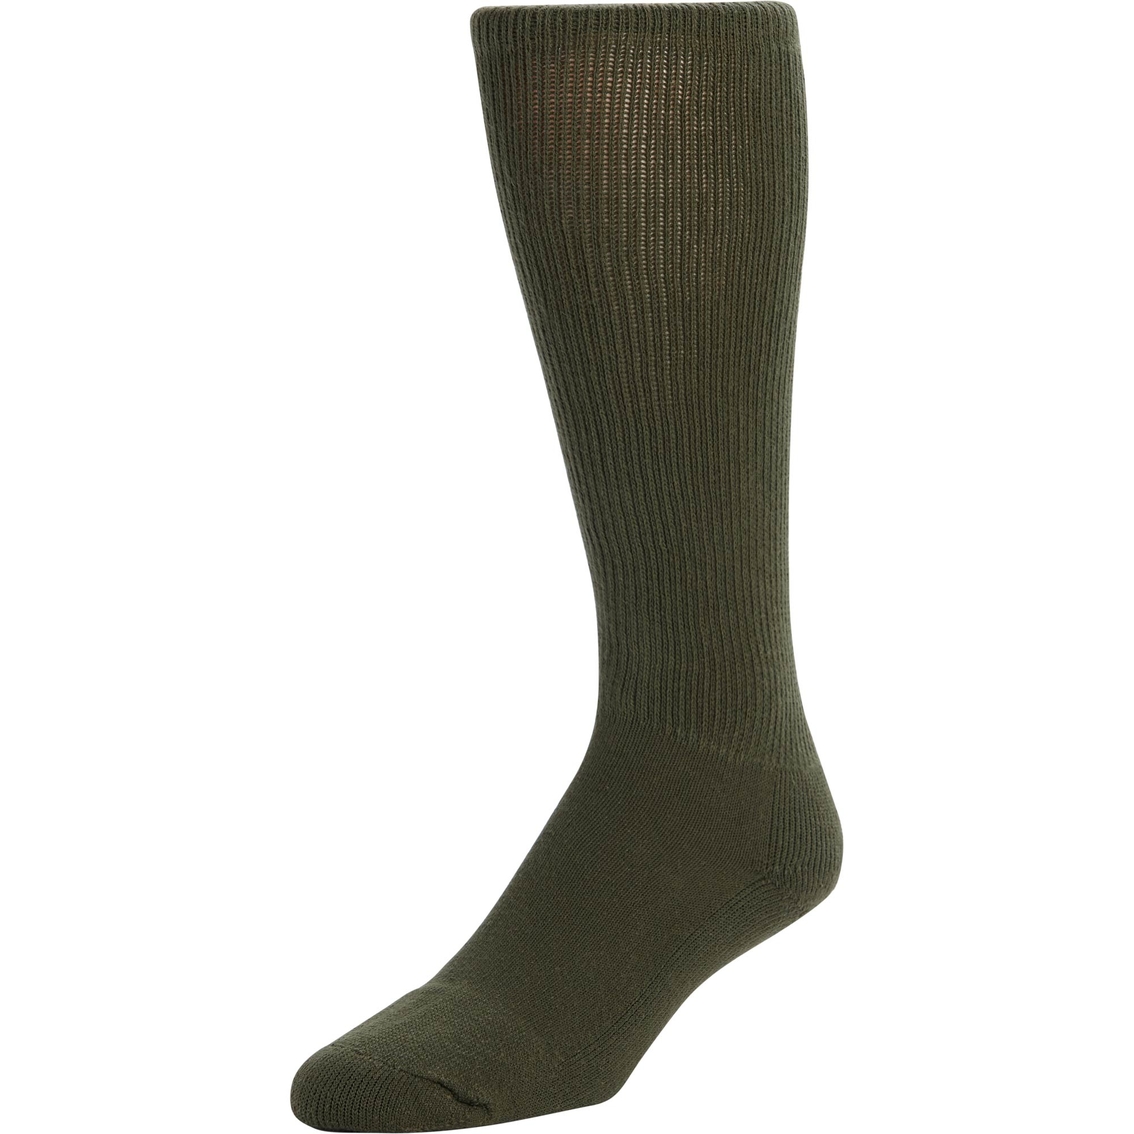 nylon boot socks